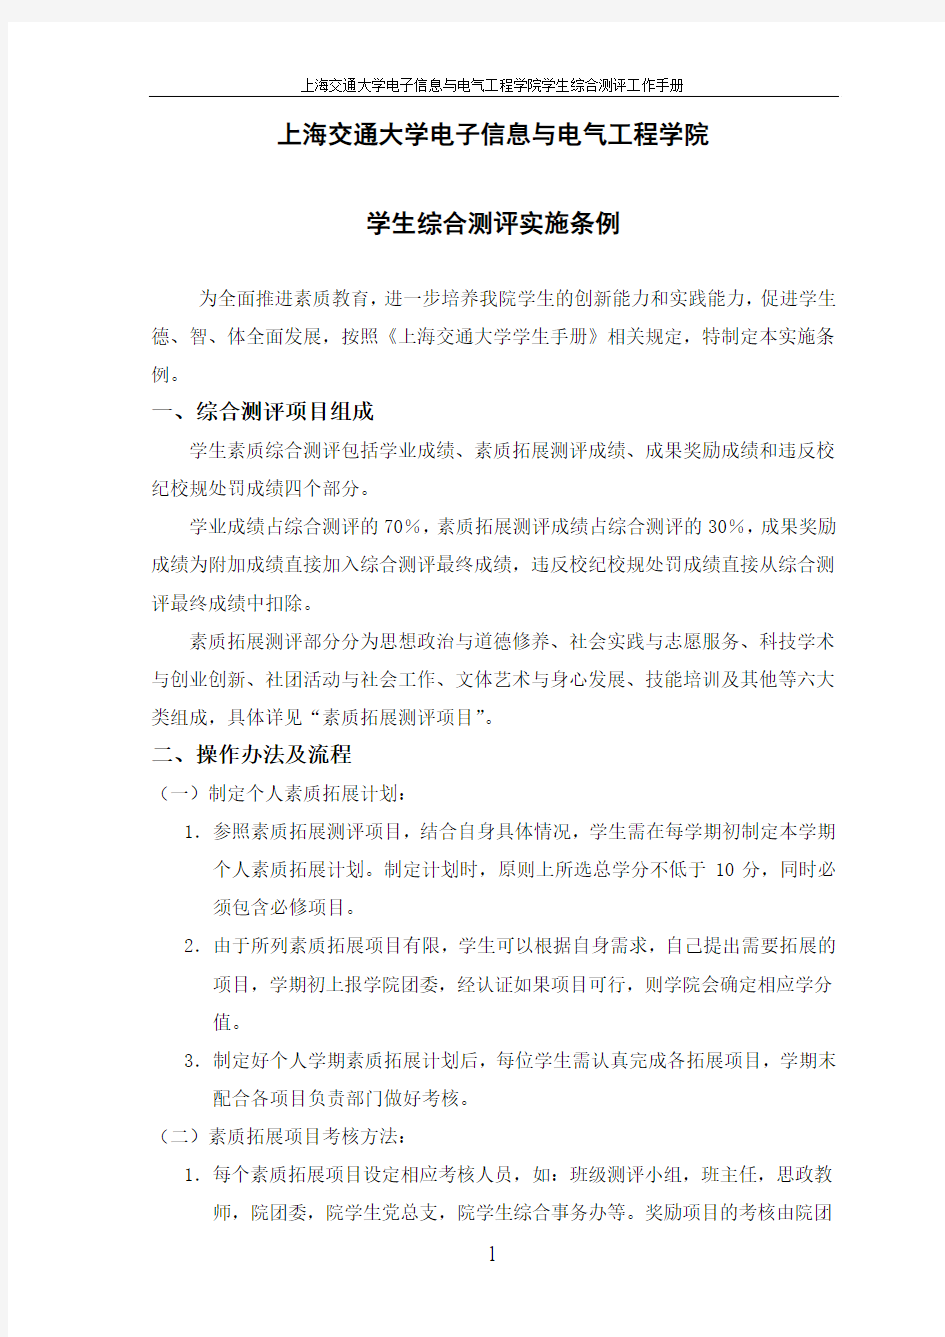 【2015年修订版】上海交通大学电子信息与电气工程学院学生综合测评实施条例